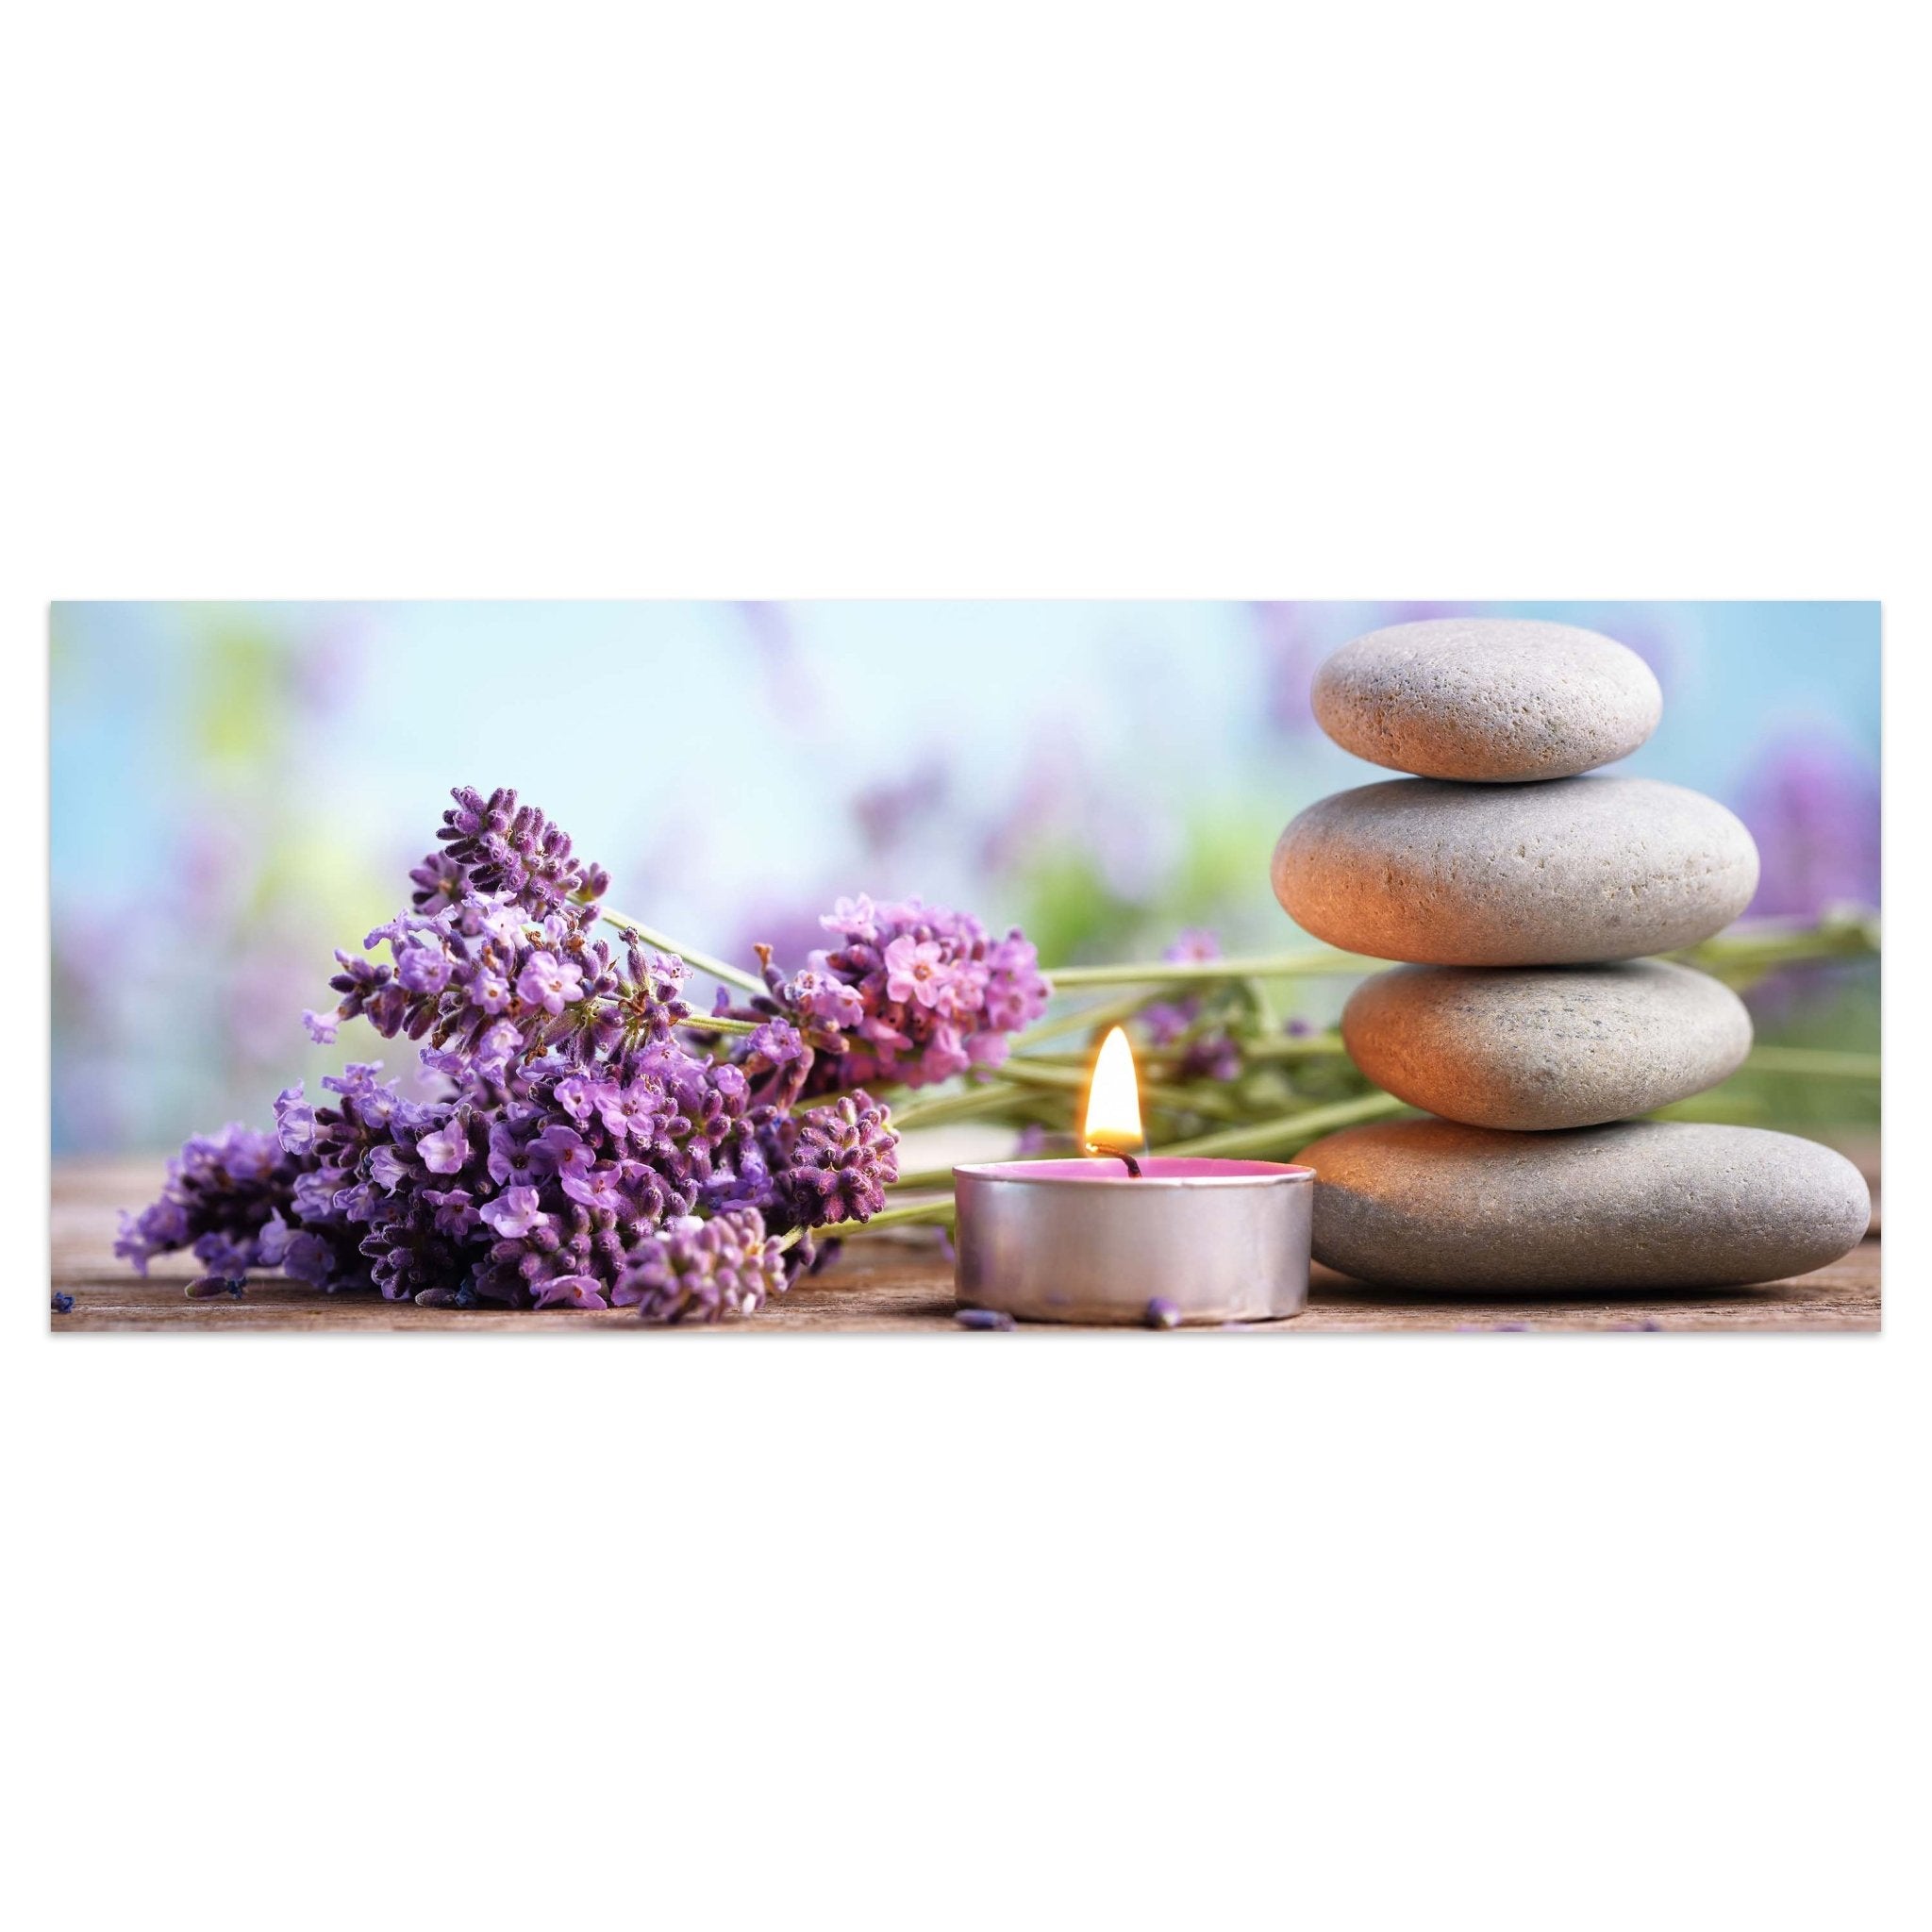 Leinwandbild Teelicht, Steine, Lavendel, Wellness M1102 kaufen - Bild 1